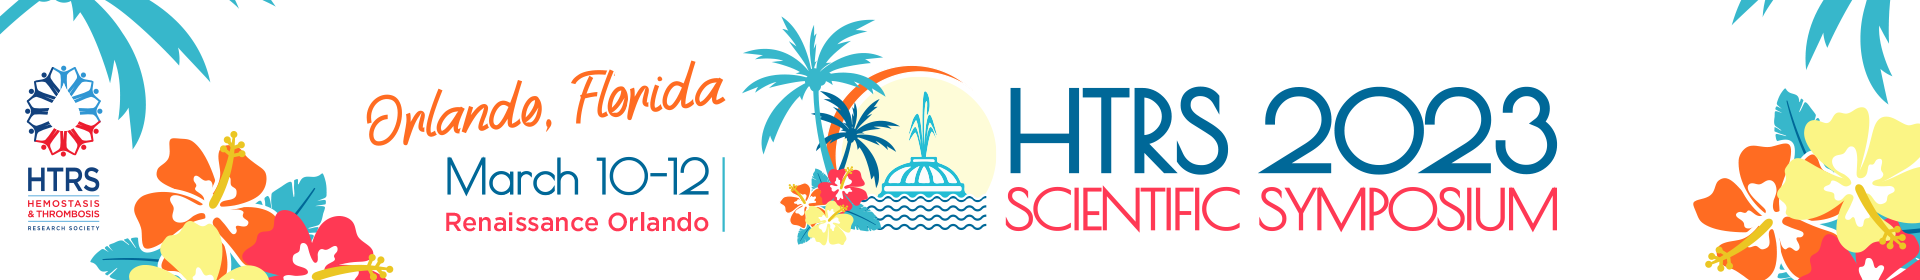 HTRS 2023 Scientific Symposium Event Banner